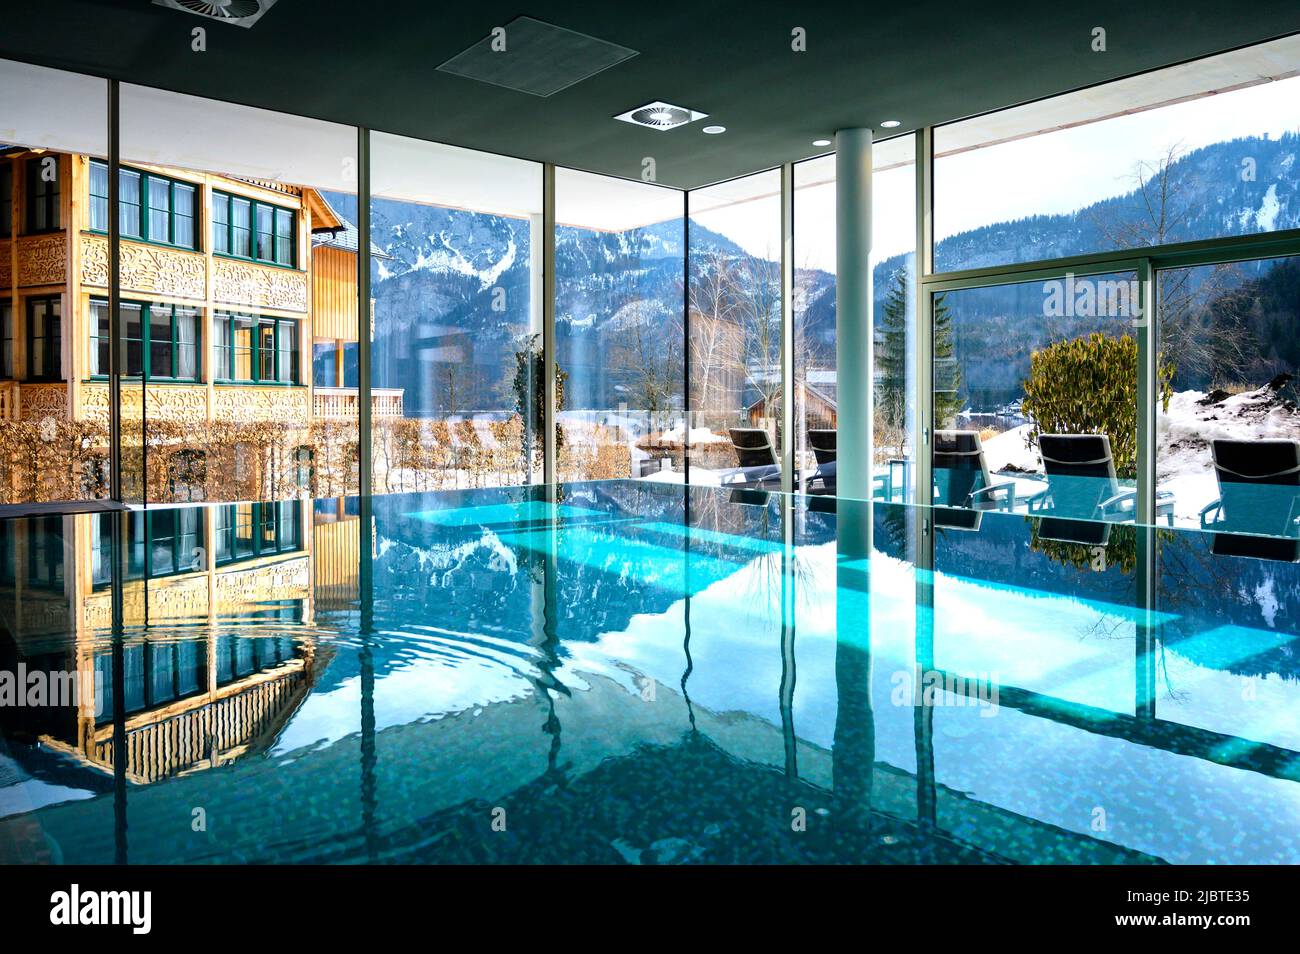 Austria, Ausseerland region, Altausse, Vivamayr wellness resort Stock Photo